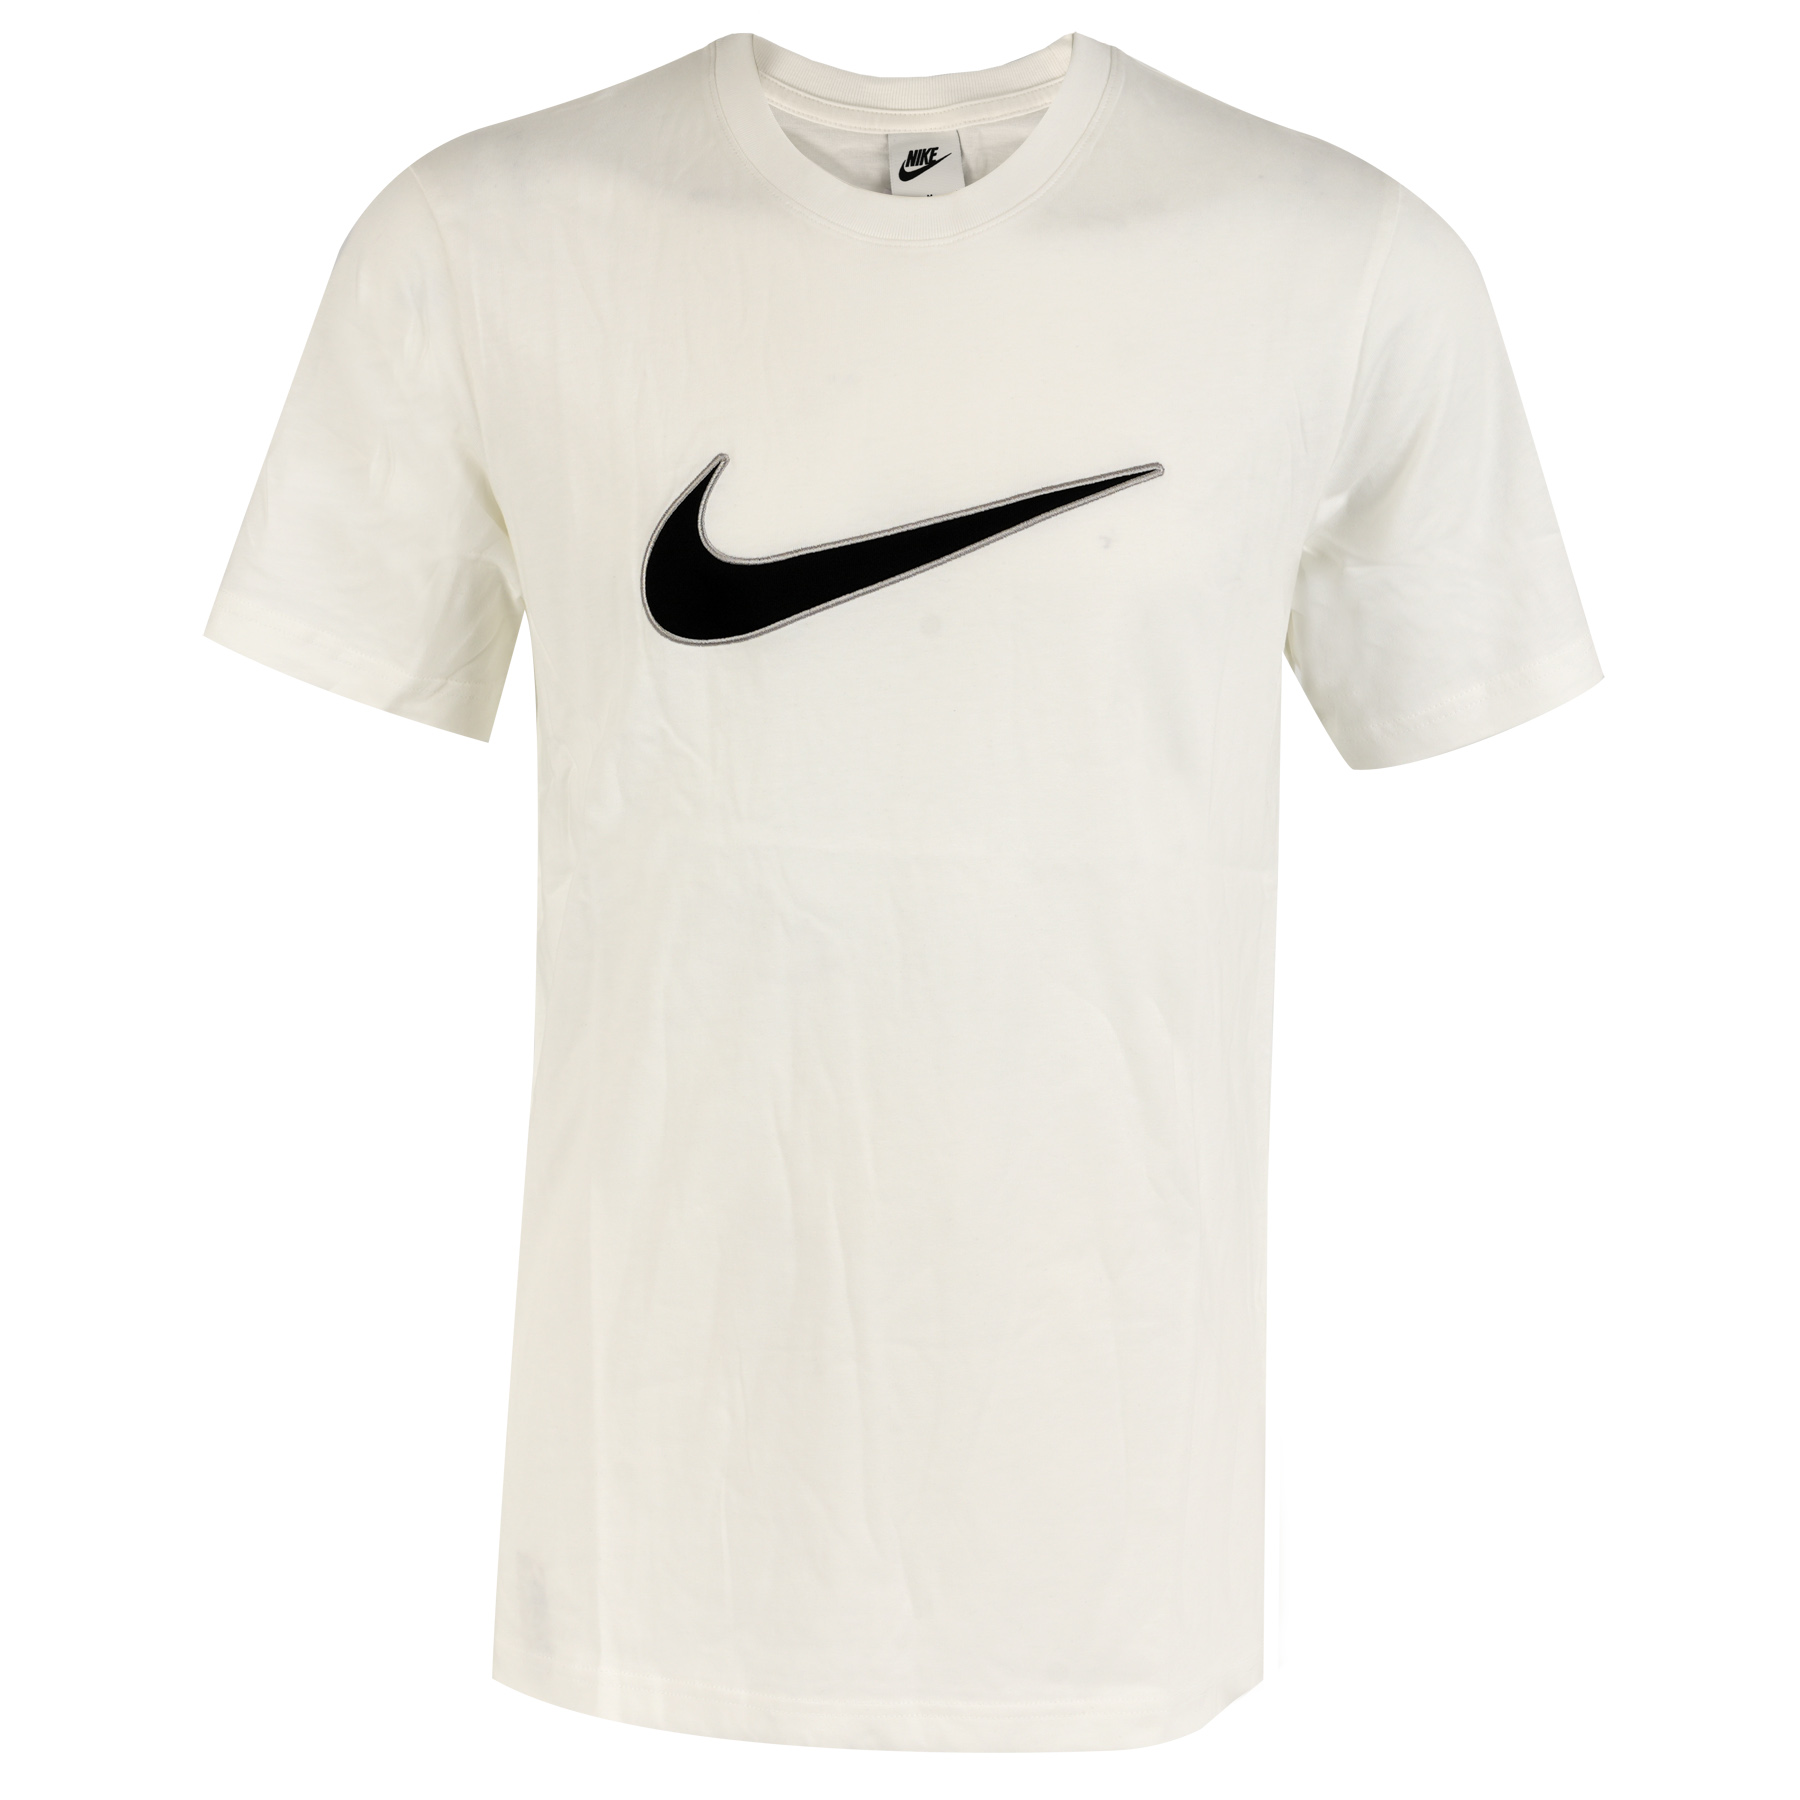 Produktbild von Nike Sportswear T-Shirt Herren - weiß FN0248-100